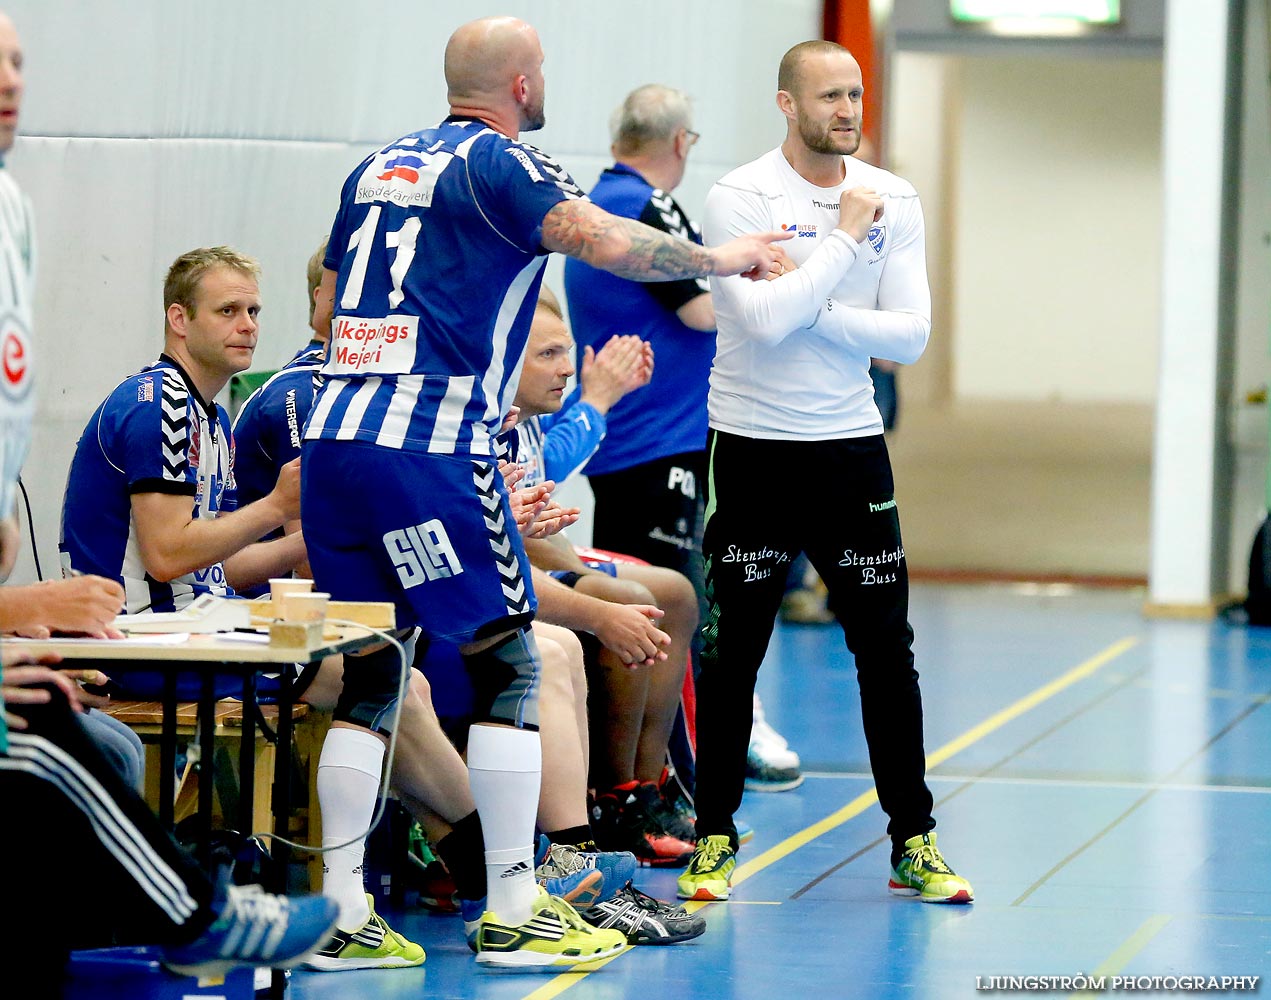 Trim-SM Herrar Bronsmatch Västra Frölunda IF-IFK Skövde HK 11-20,herr,Arena Skövde,Skövde,Sverige,Handboll,,2015,117068